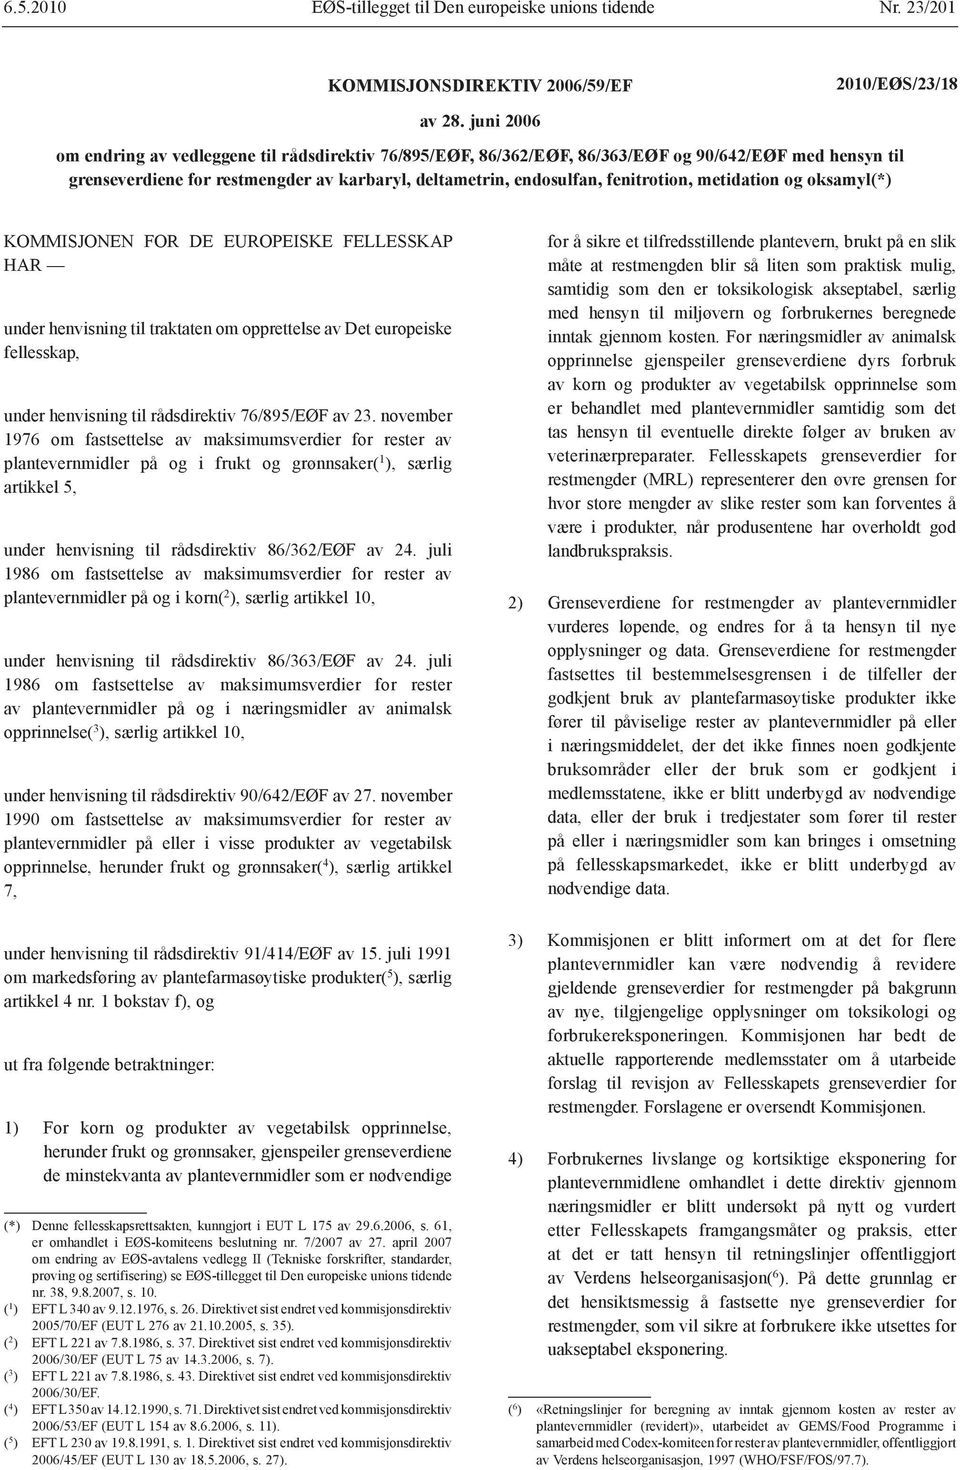 metidation og oksamyl(*) KOMMISJONEN FOR DE EUROPEISKE FELLESSKAP HAR under henvisning til traktaten om opprettelse av Det europeiske fellesskap, under henvisning til rådsdirektiv 76/895/EØF av 23.